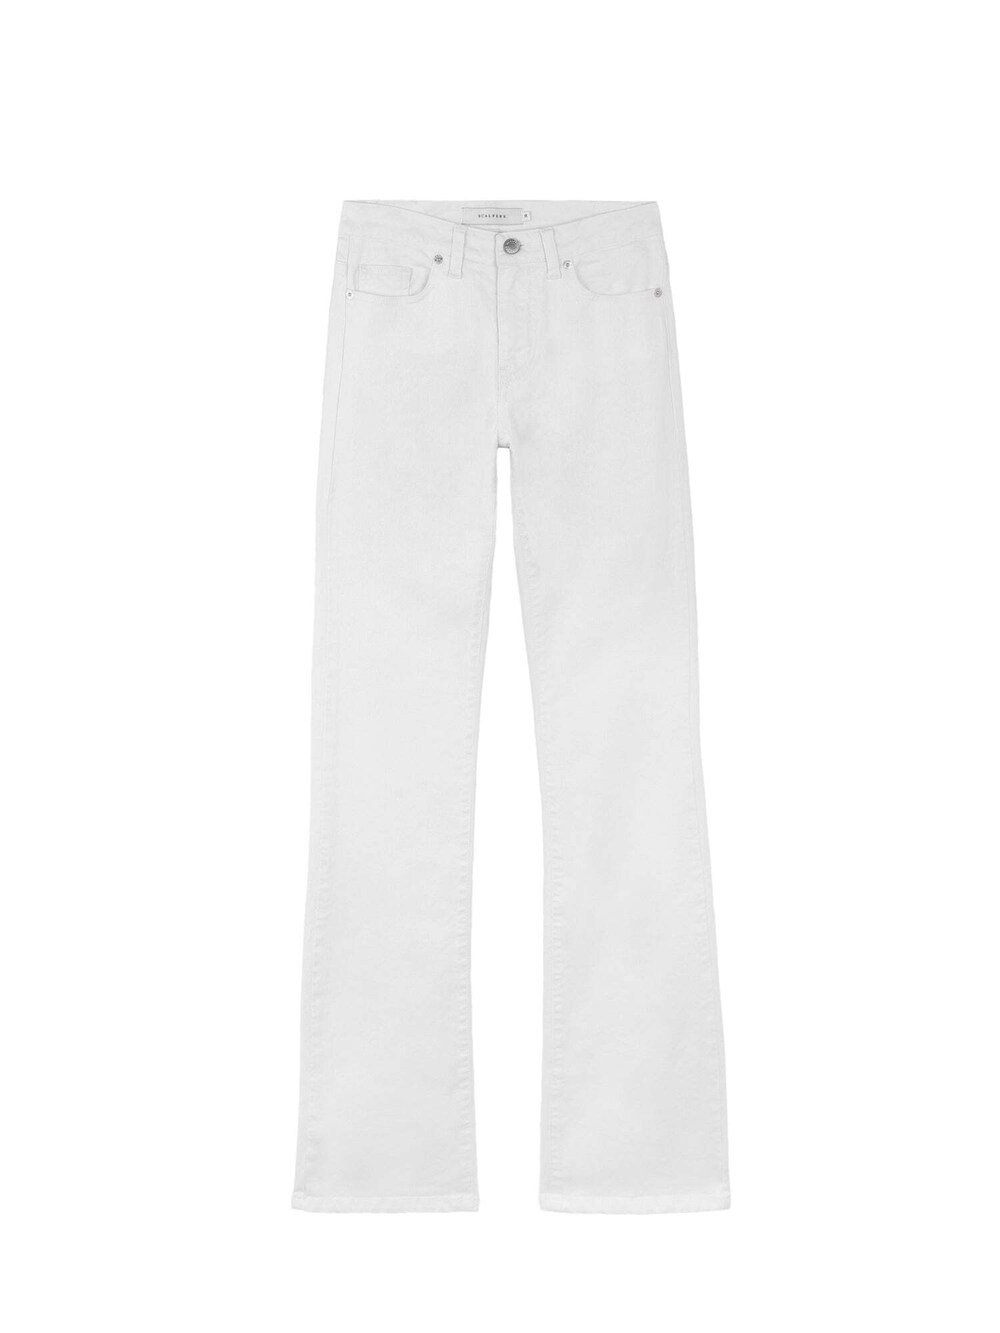 Обычные джинсы Scalpers, белый